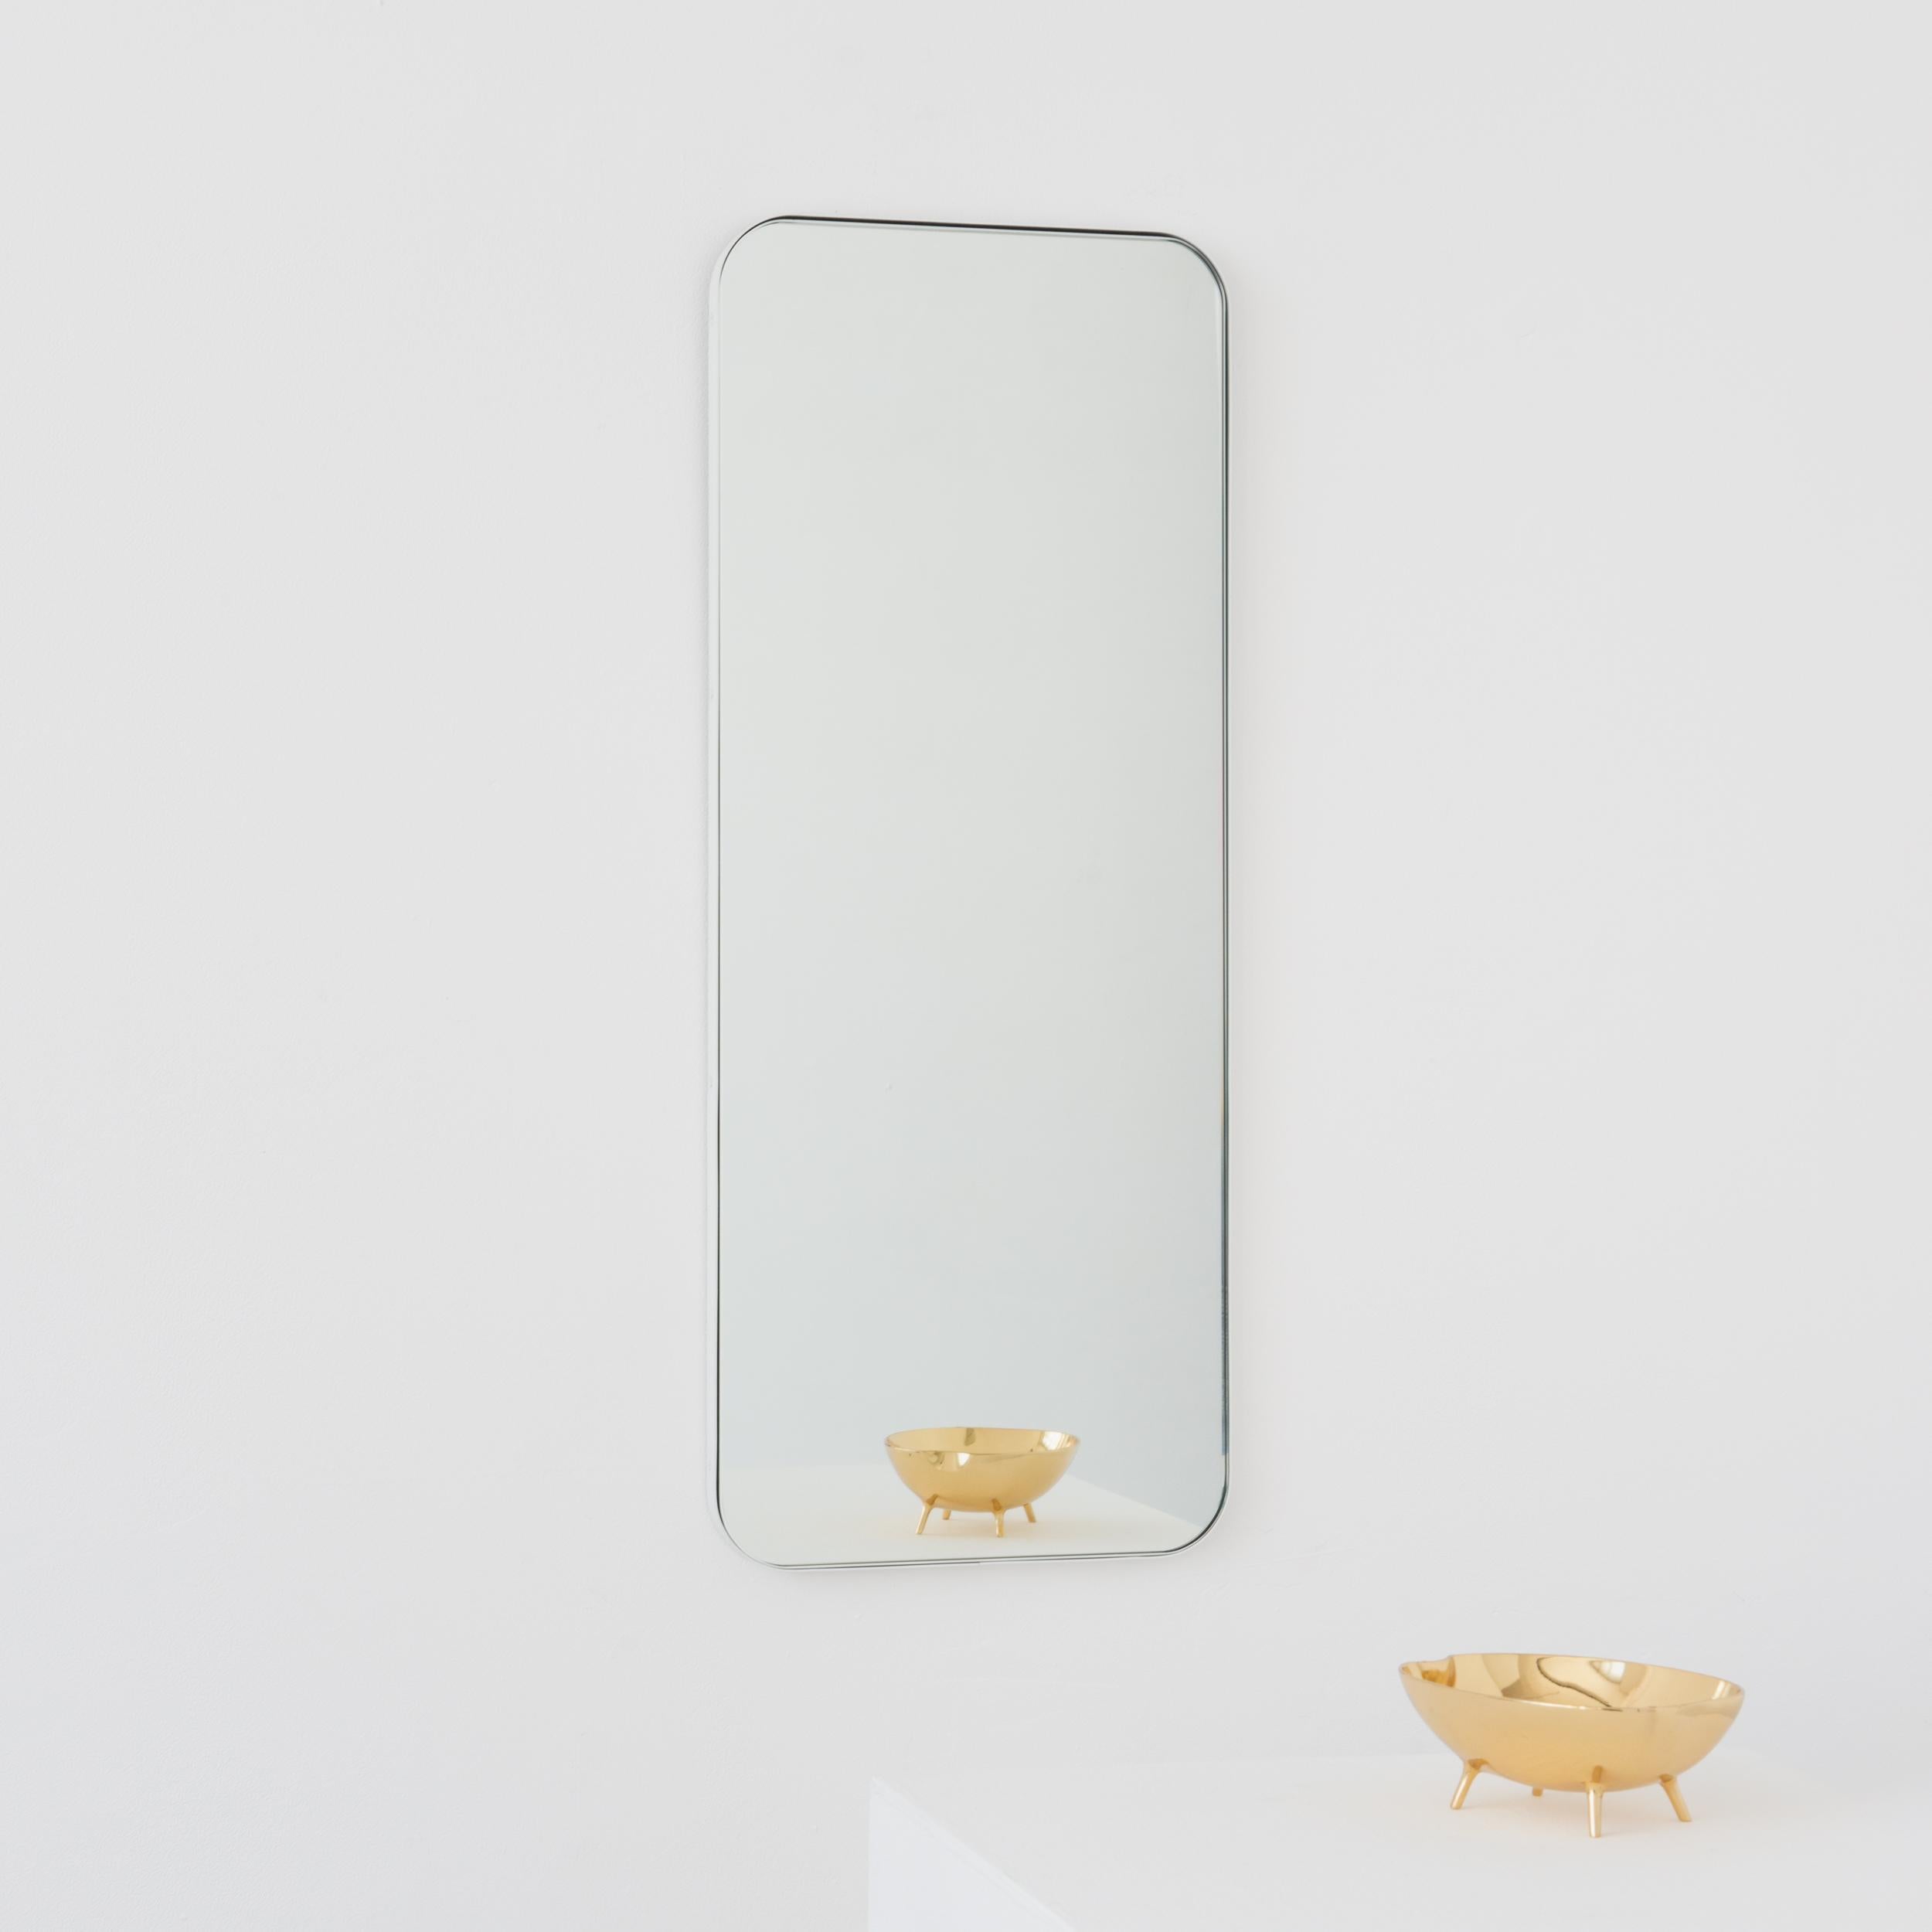 Miroir rectangulaire minimaliste avec un cadre blanc moderne. Une partie de la charmante collection Quadris™, conçue et fabriquée à la main à Londres, au Royaume-Uni. 

Fourni avec une barre en z spécialisée pour une installation facile. Un système